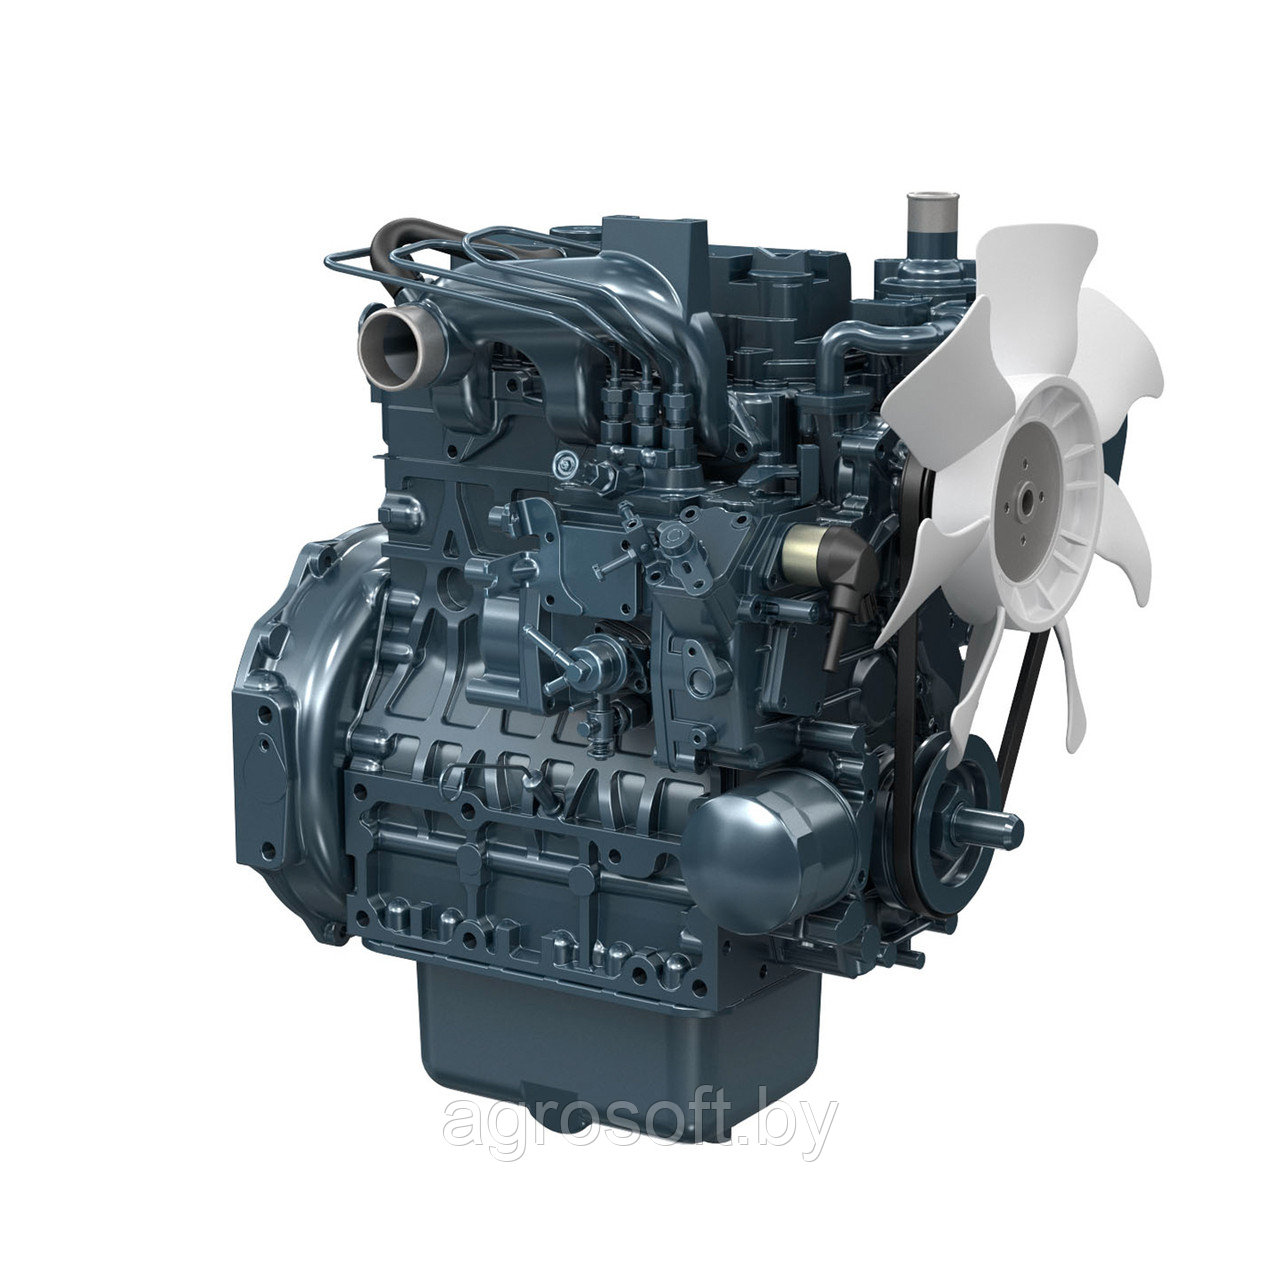 Ремонт дизельного двигателя Kubota D1803 M E3B